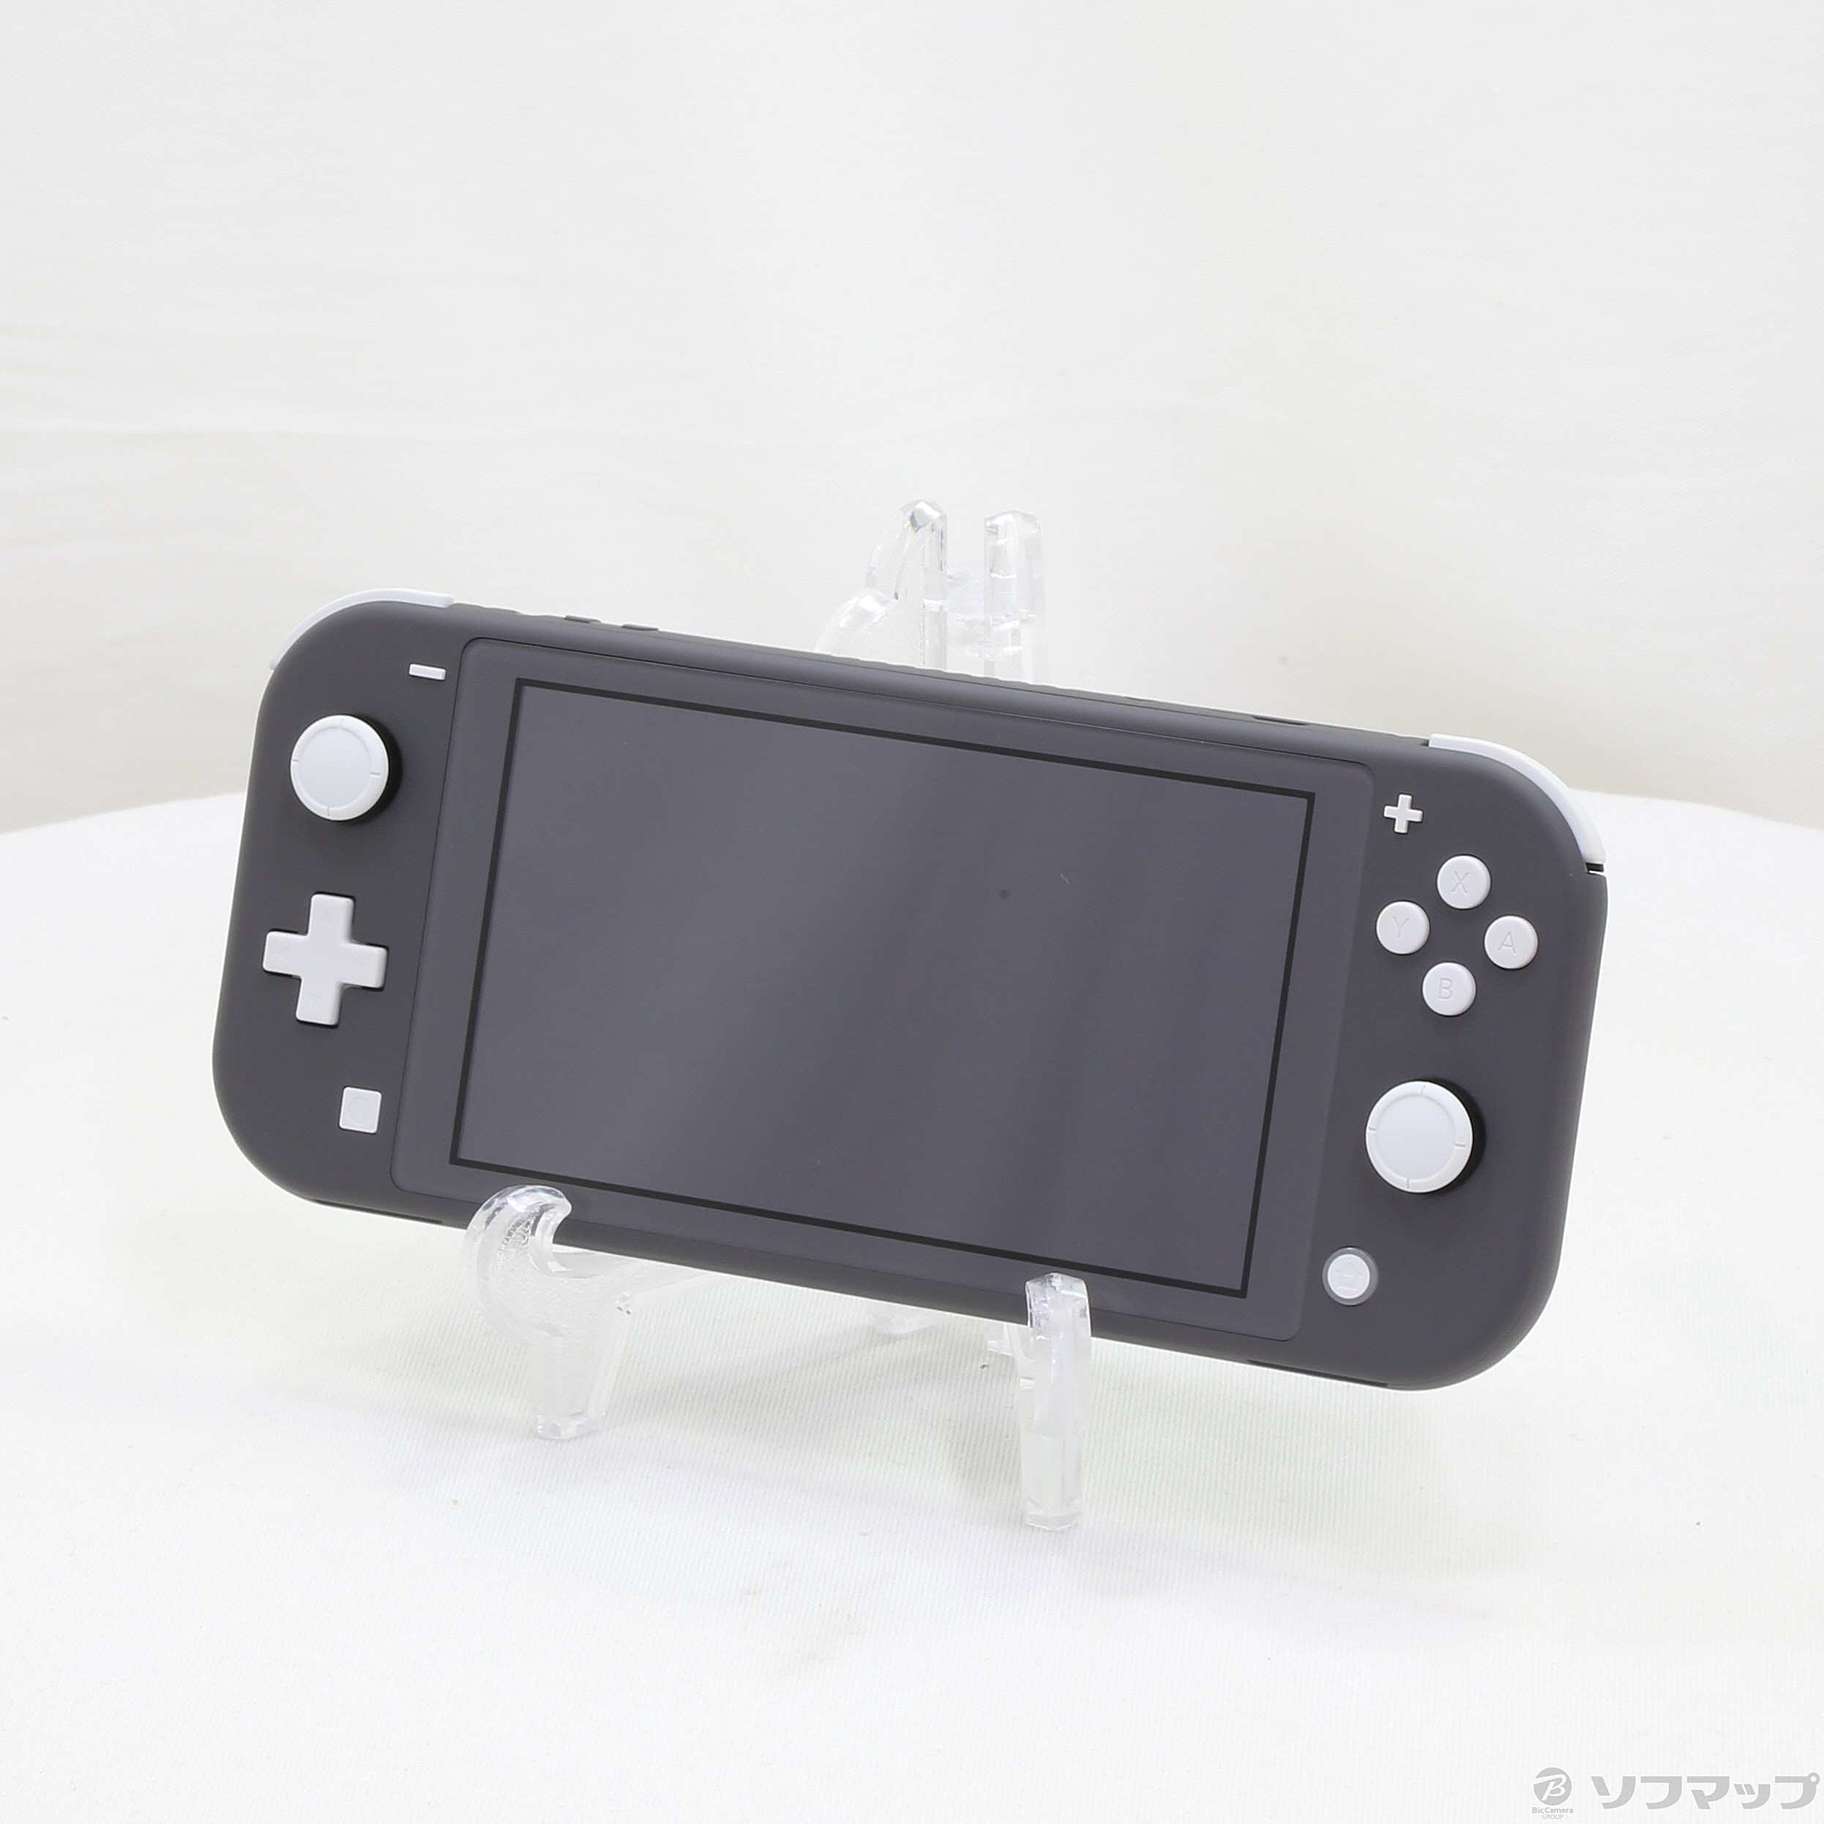 セール対象品 Nintendo Switch Lite グレー